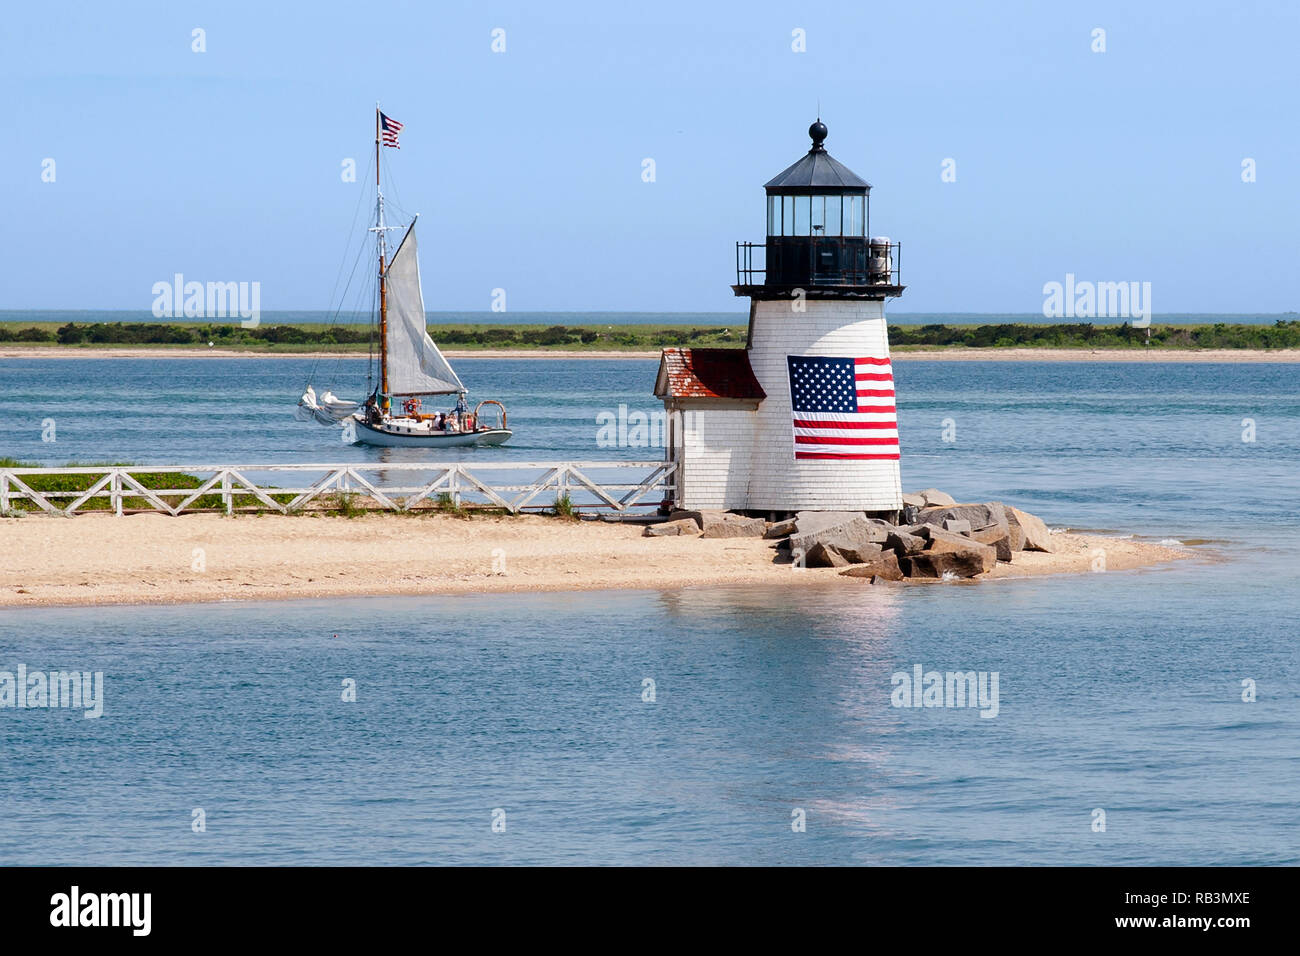 Brant Point Lighthouse, avec son drapeau américain enroulé autour de sa tour en bois, guides un voilier hors de port de l'île de Nantucket dans le Massachusetts. Banque D'Images